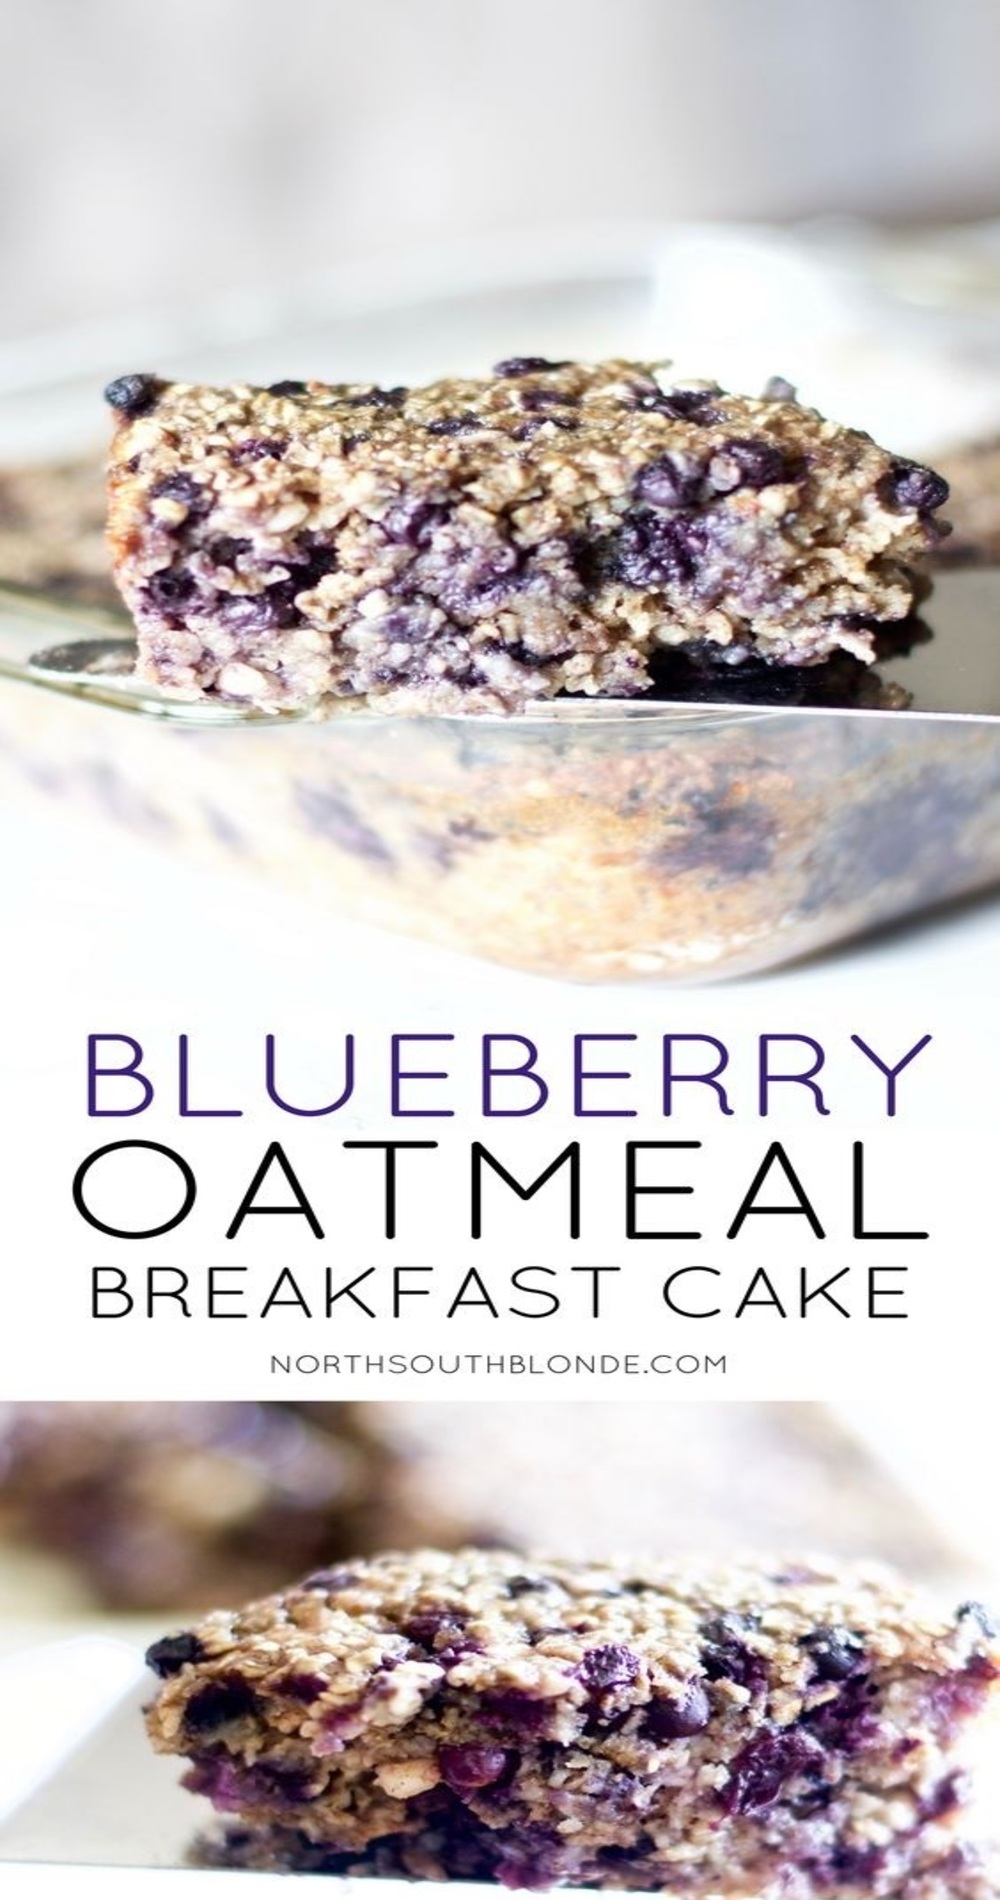 Oatmeal Blueberry Breakfast Cake